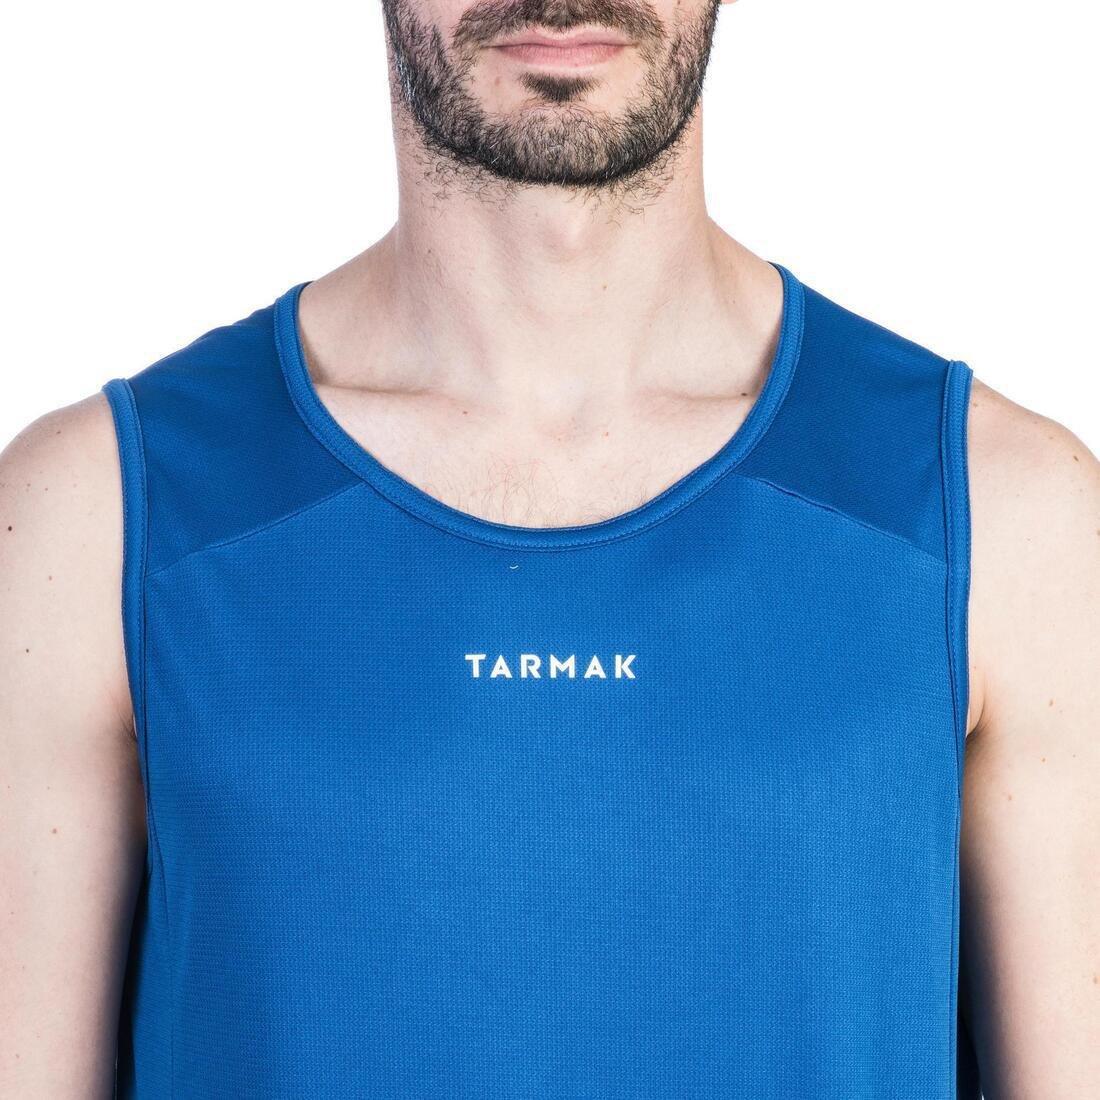 TARMAK - Men's Sleeveless Basketball Jersey T100, Deep Blue